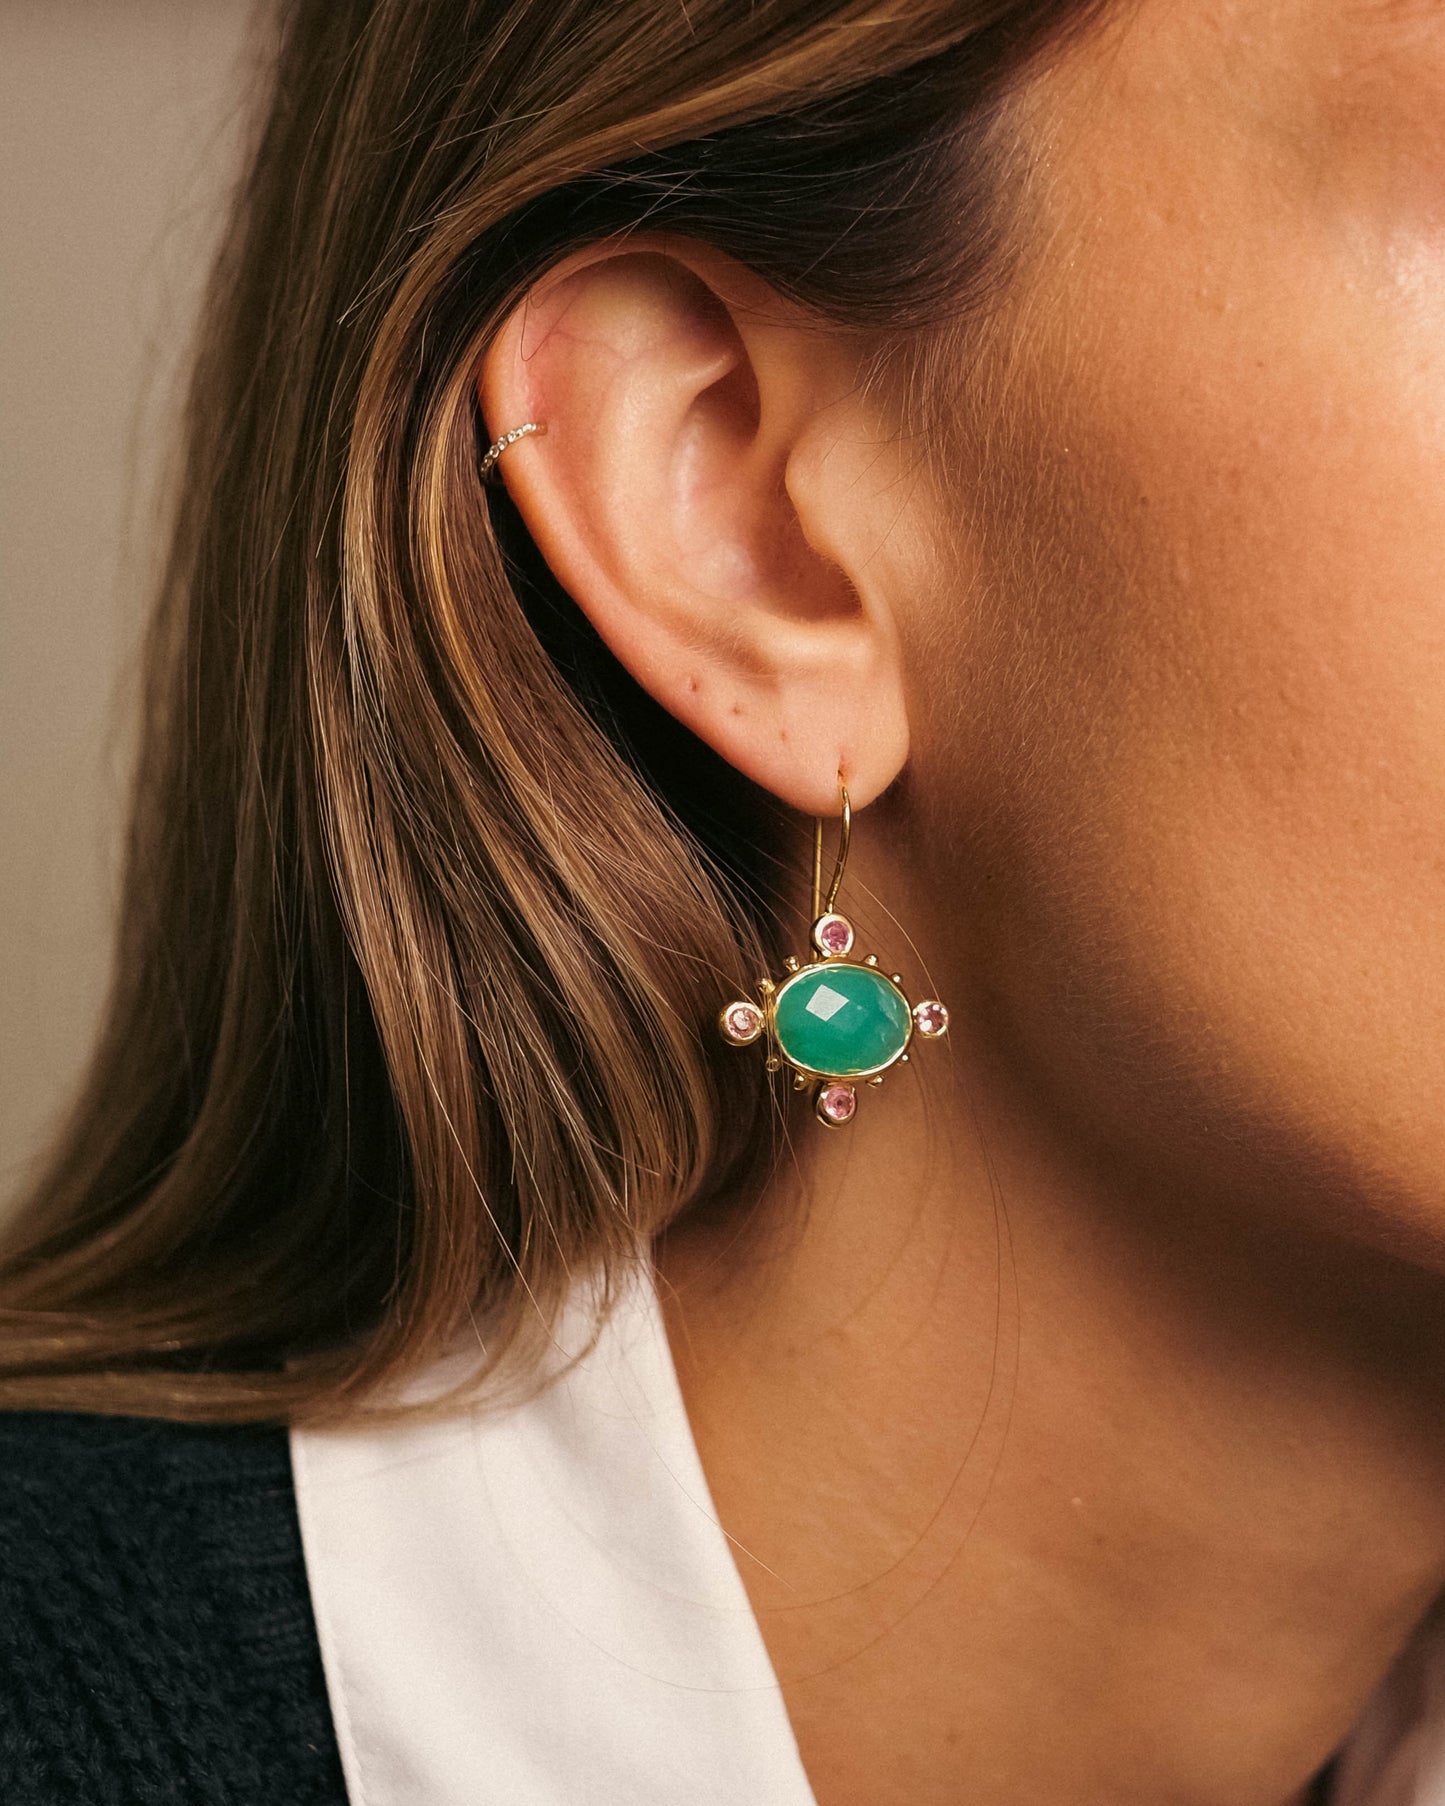 boucles d'oreilles or vermeil dormeuse pierre semi précieuse onyx vert tourmaline création joaillerie bijouterie paris bijoux femme